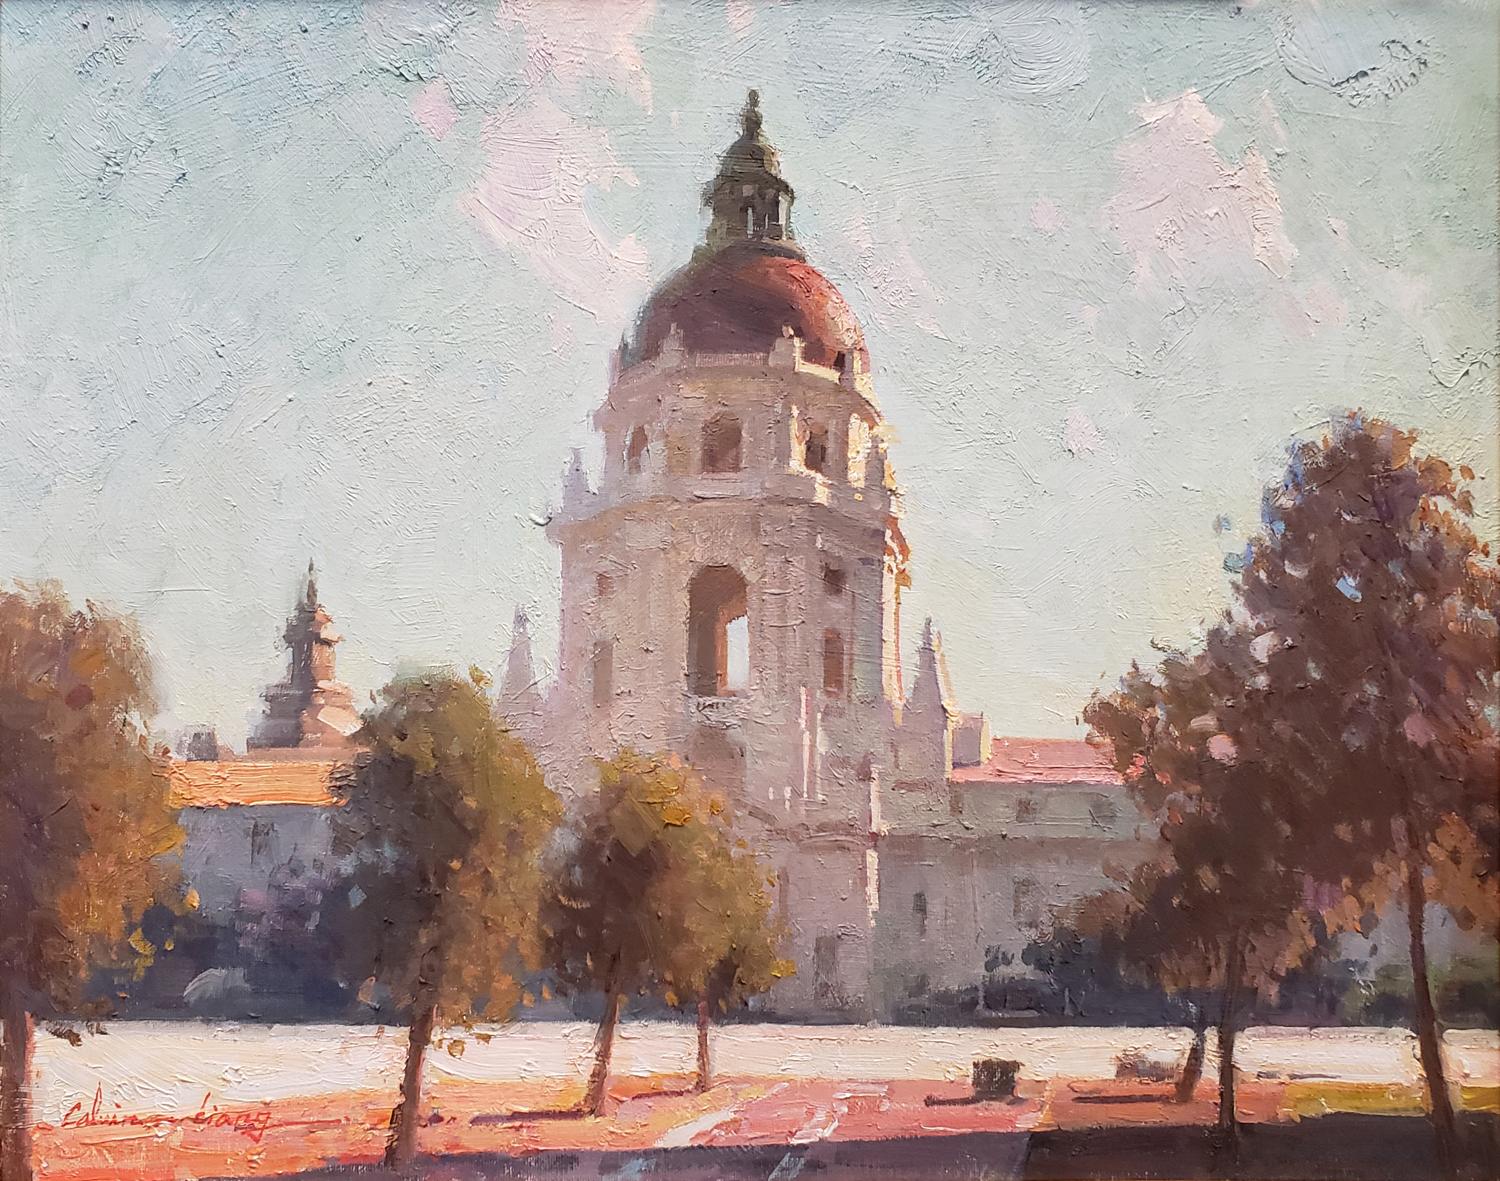 Pasadena City Hall - Painting by Calvin Liang